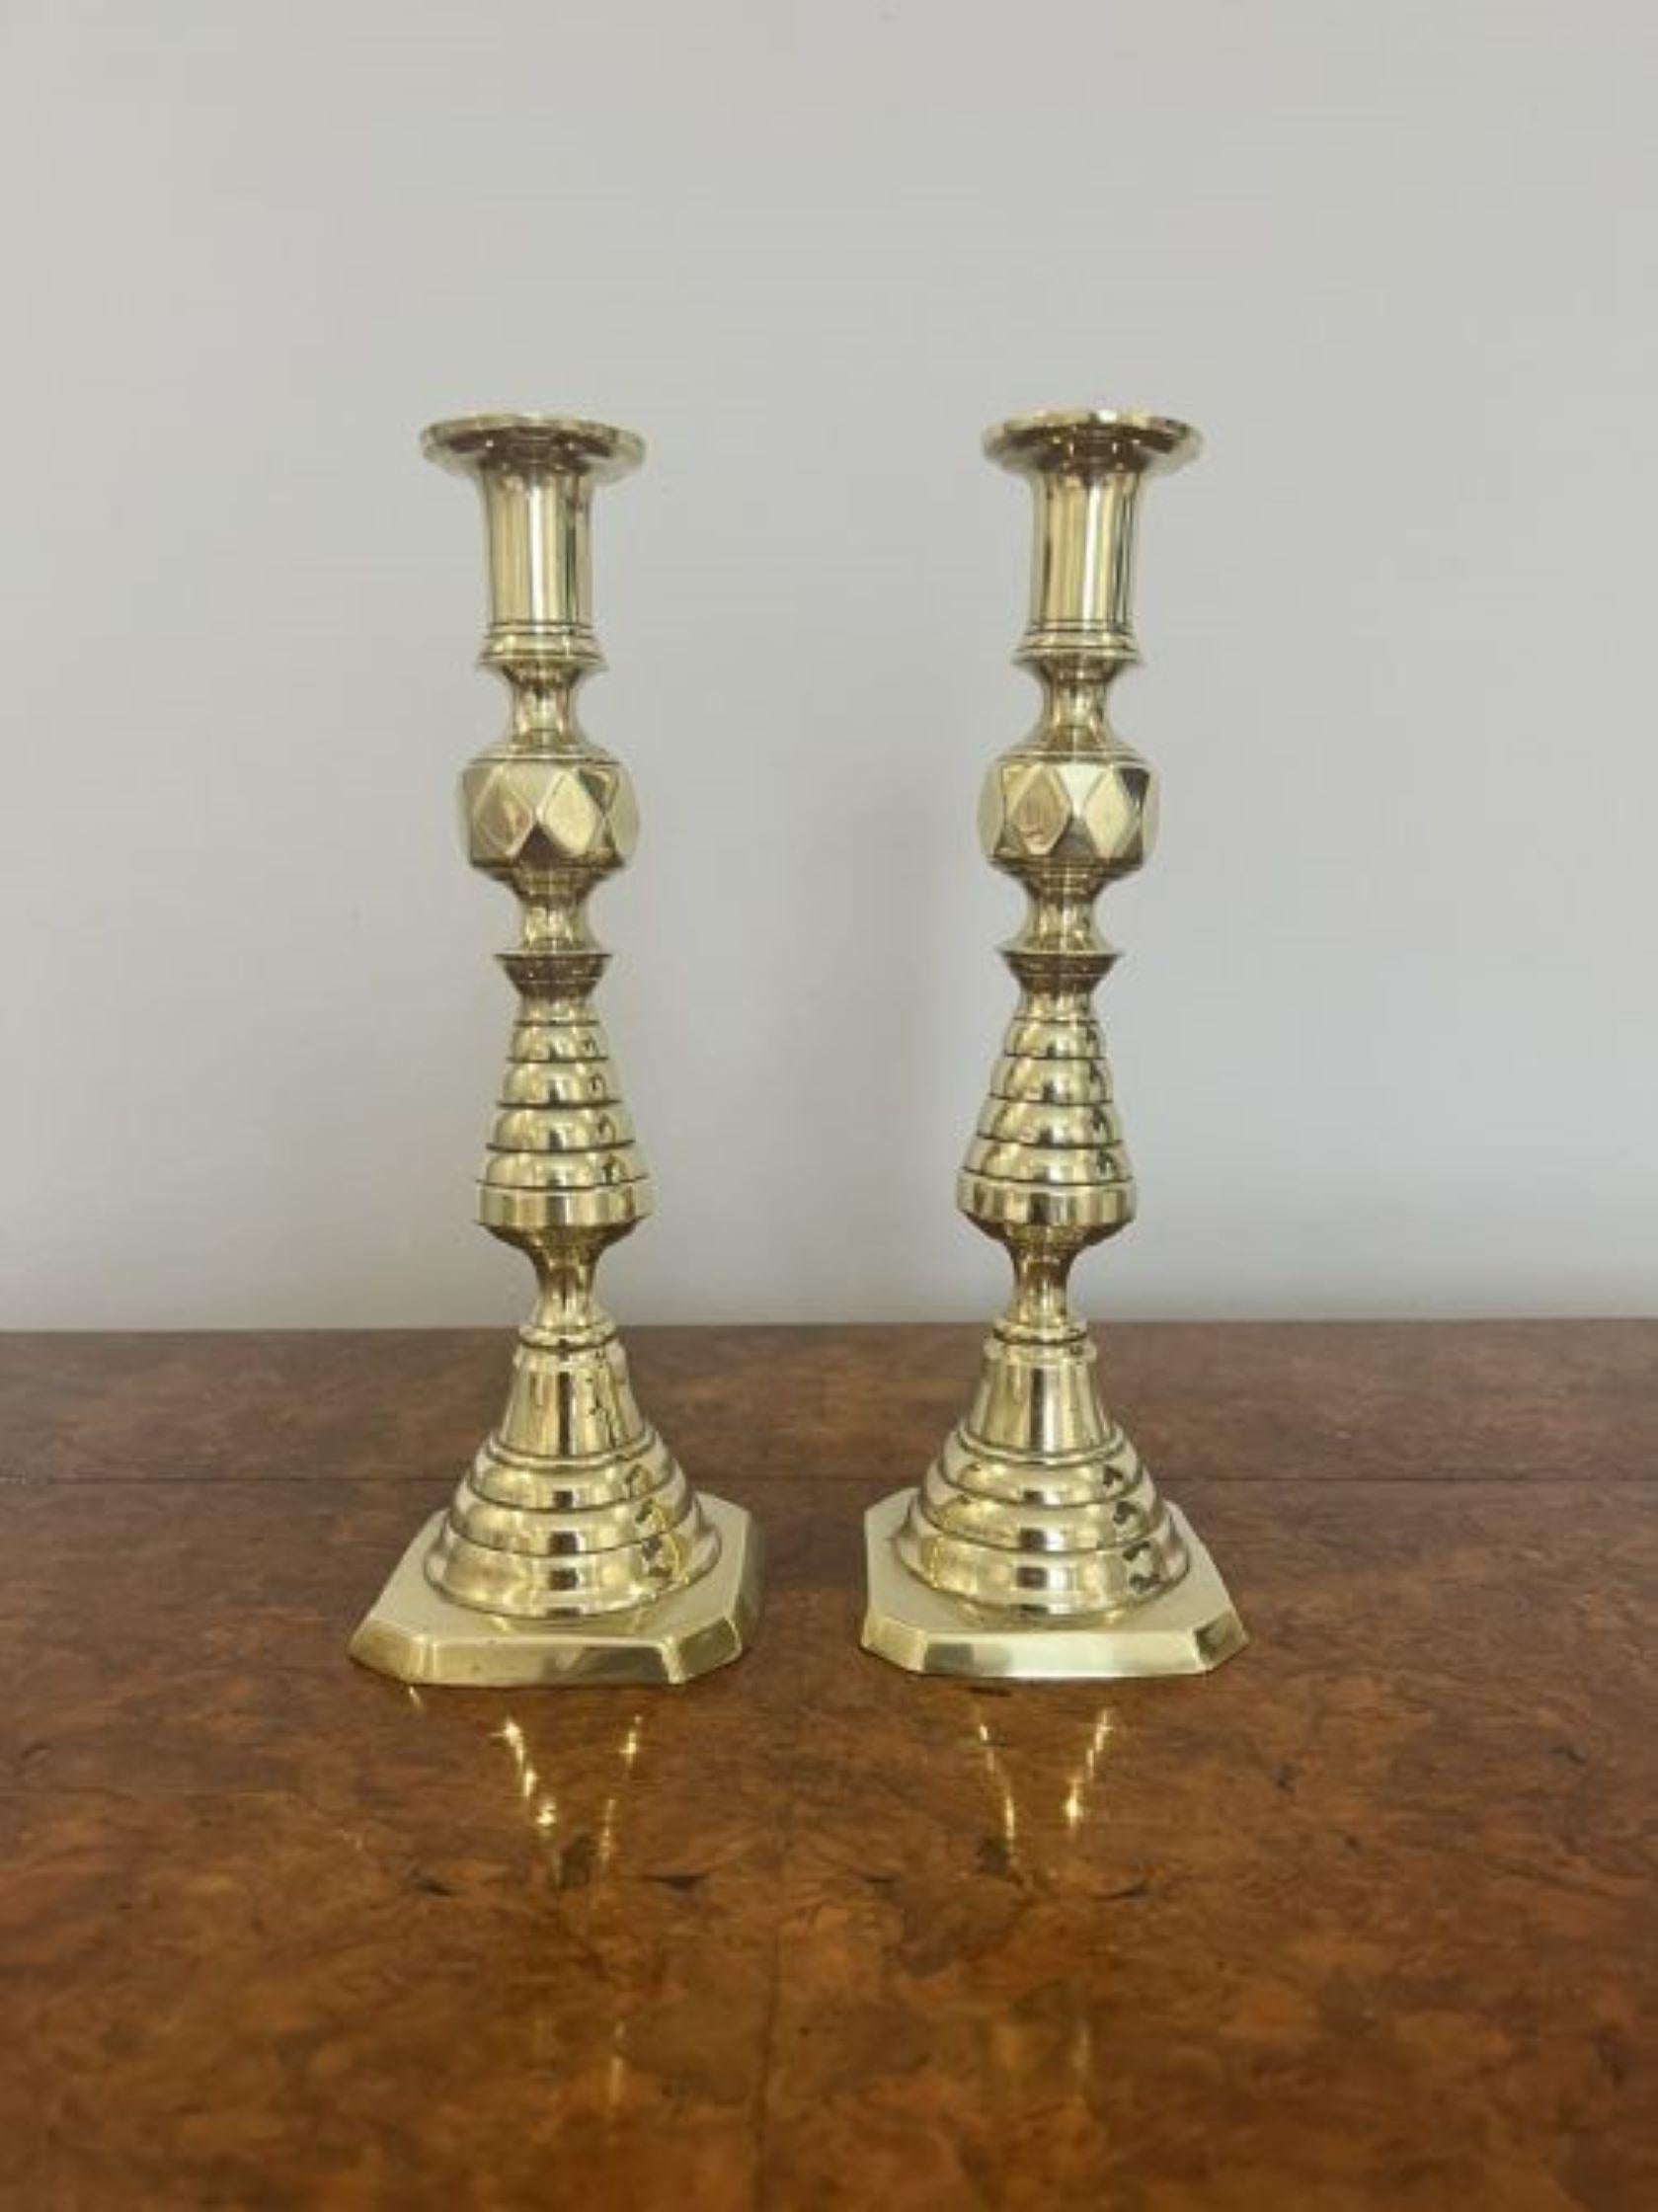 Hochwertiges Paar antiker viktorianischer Messing-Kerzenhalter mit einer gedrehten, geformten Säule, die auf einem abgestuften Sockel steht. 